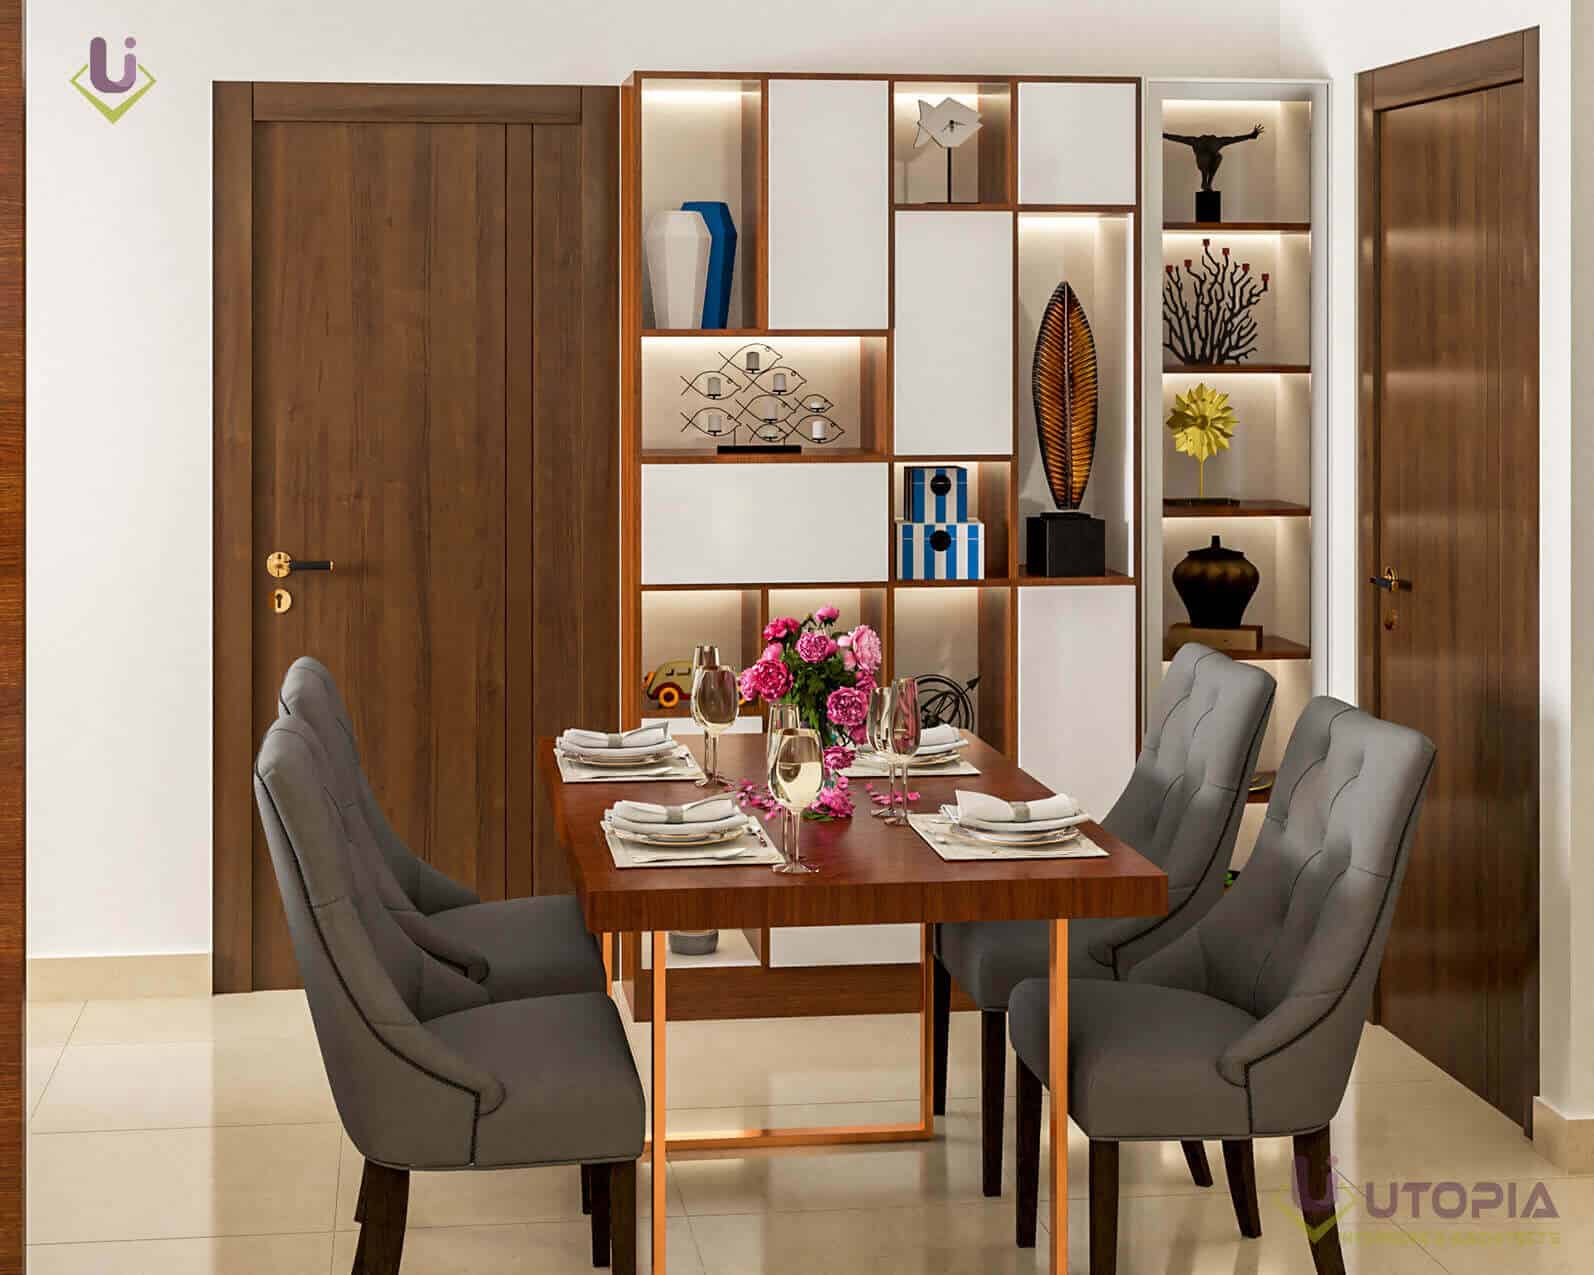 Apartments interior designers in bangalore-dining